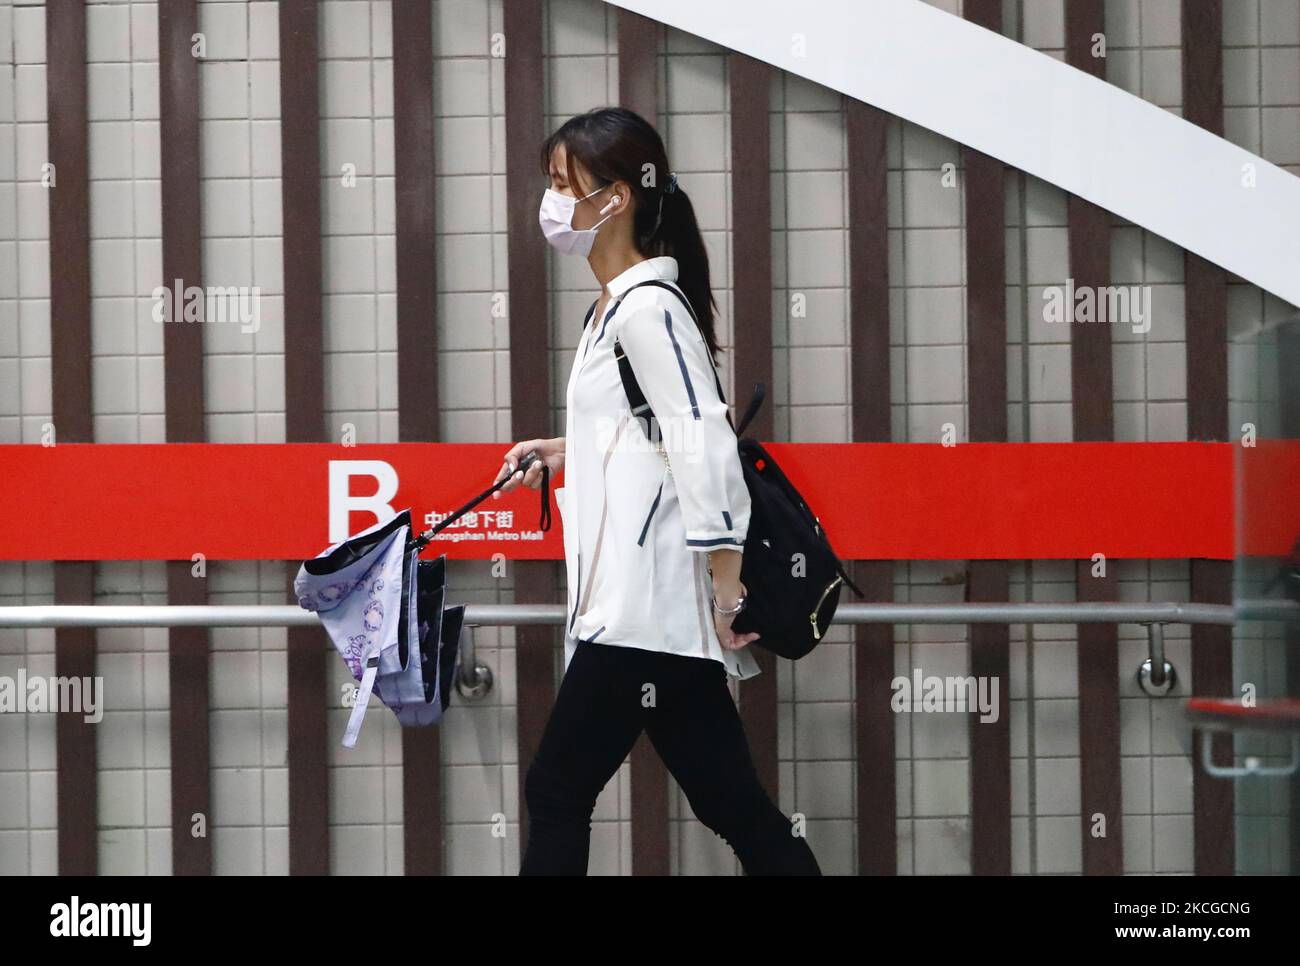 Le persone che indossano maschere facciali viste in una delle principali stazioni ferroviarie della metropolitana di Taipei, mentre Taiwan estende il suo allarme di livello 3 di Covid-19 al 12 luglio, in un aumento di infezioni domestiche e morti che induce una carenza di fornitura di vaccini, a Taipei, Taiwan, il 23 giugno 2021. (Foto di Ceng Shou Yi/NurPhoto) Foto Stock